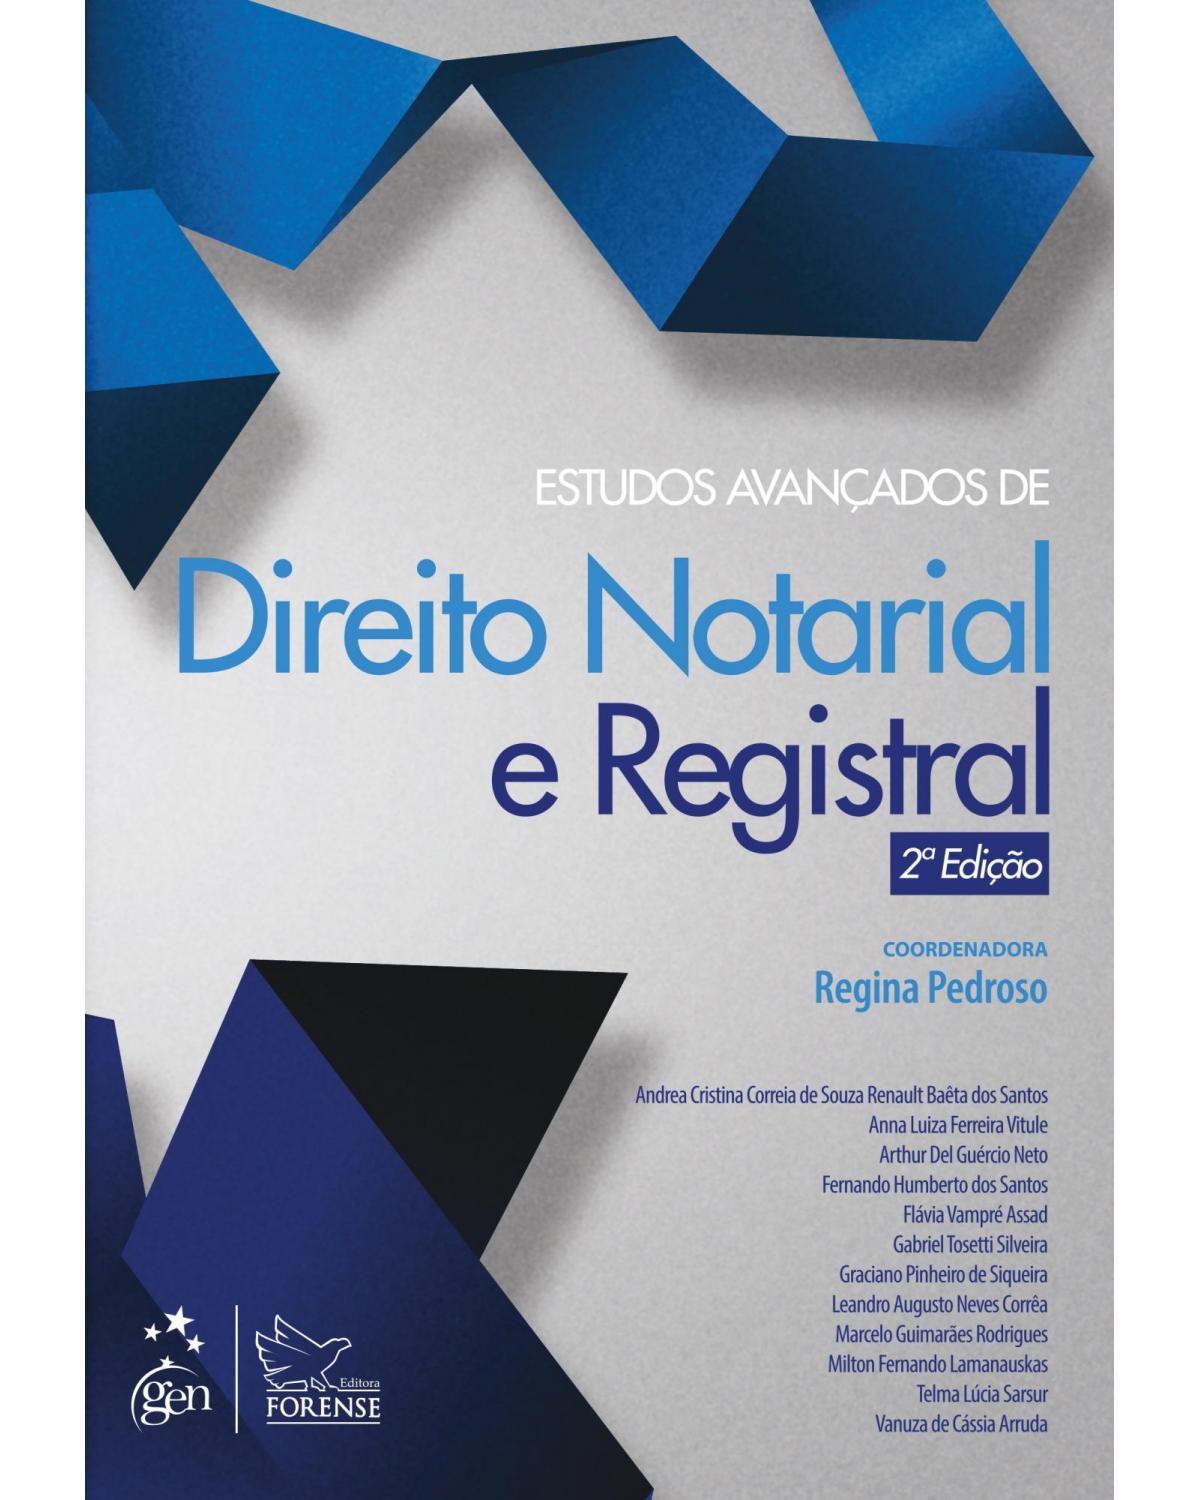 Estudos avançados de direito notarial e registral - 2ª Edição